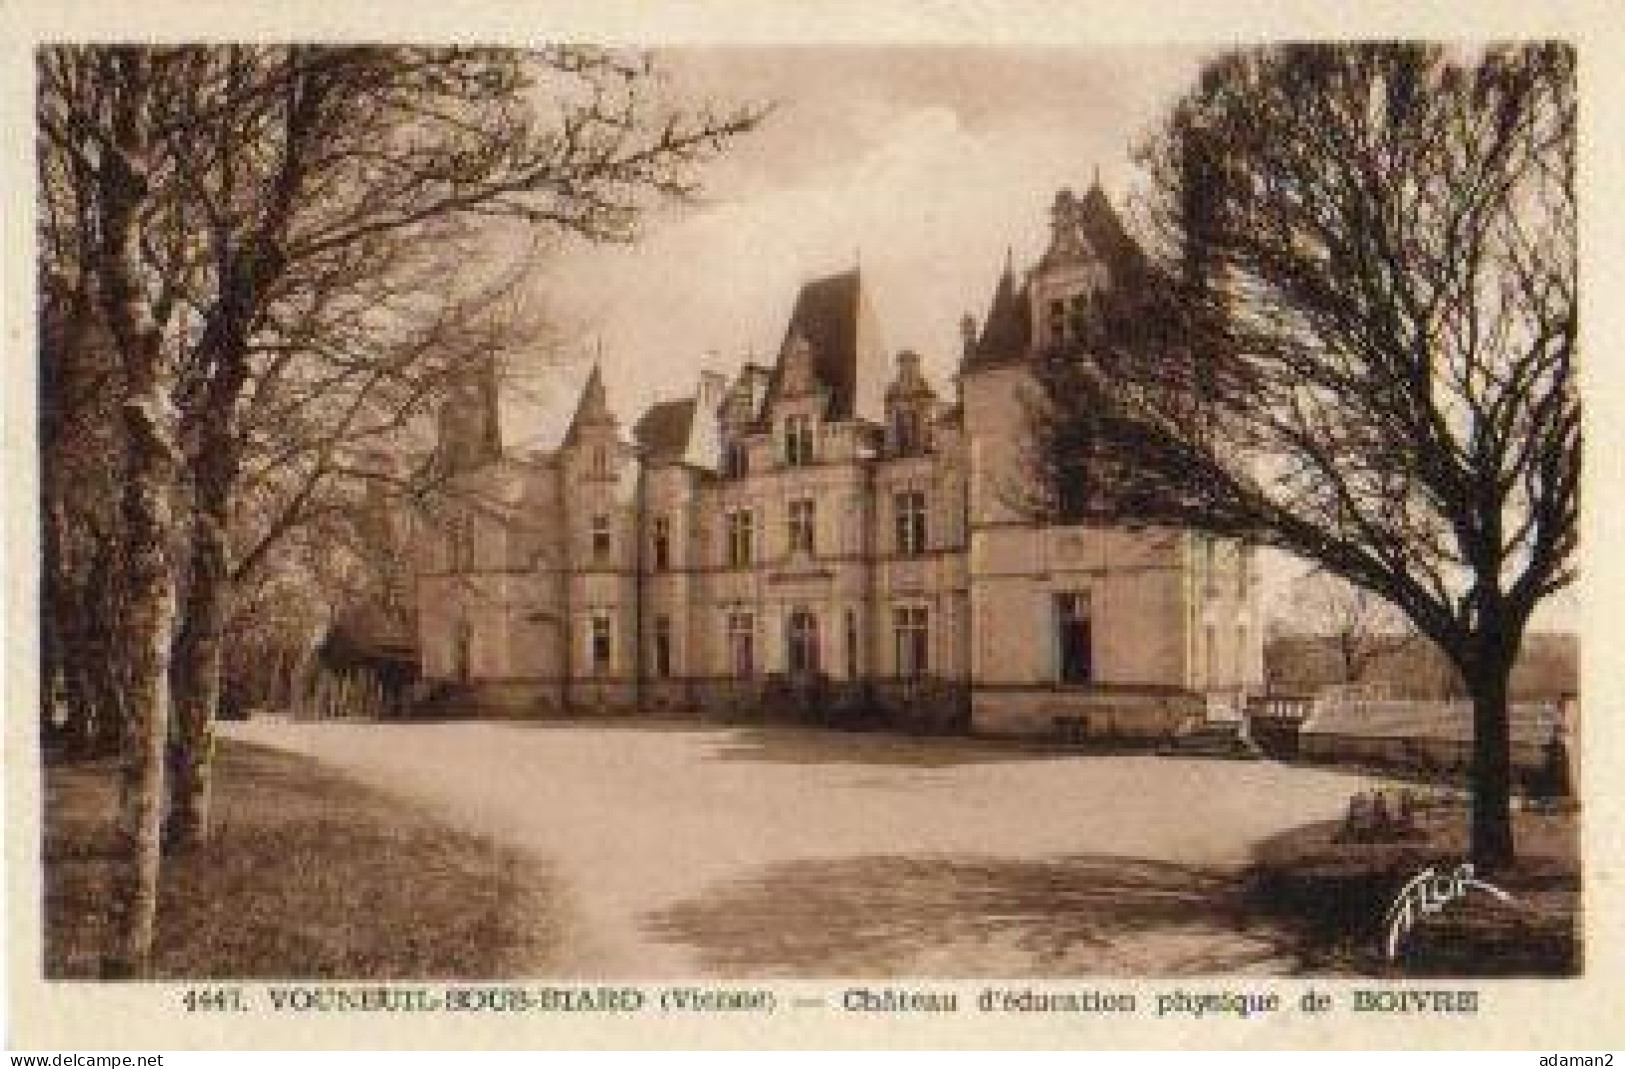 VOUNEUIL SOUS BIARD.Chateau D'éducation Physique De Boivre - Vouneuil Sous Biard